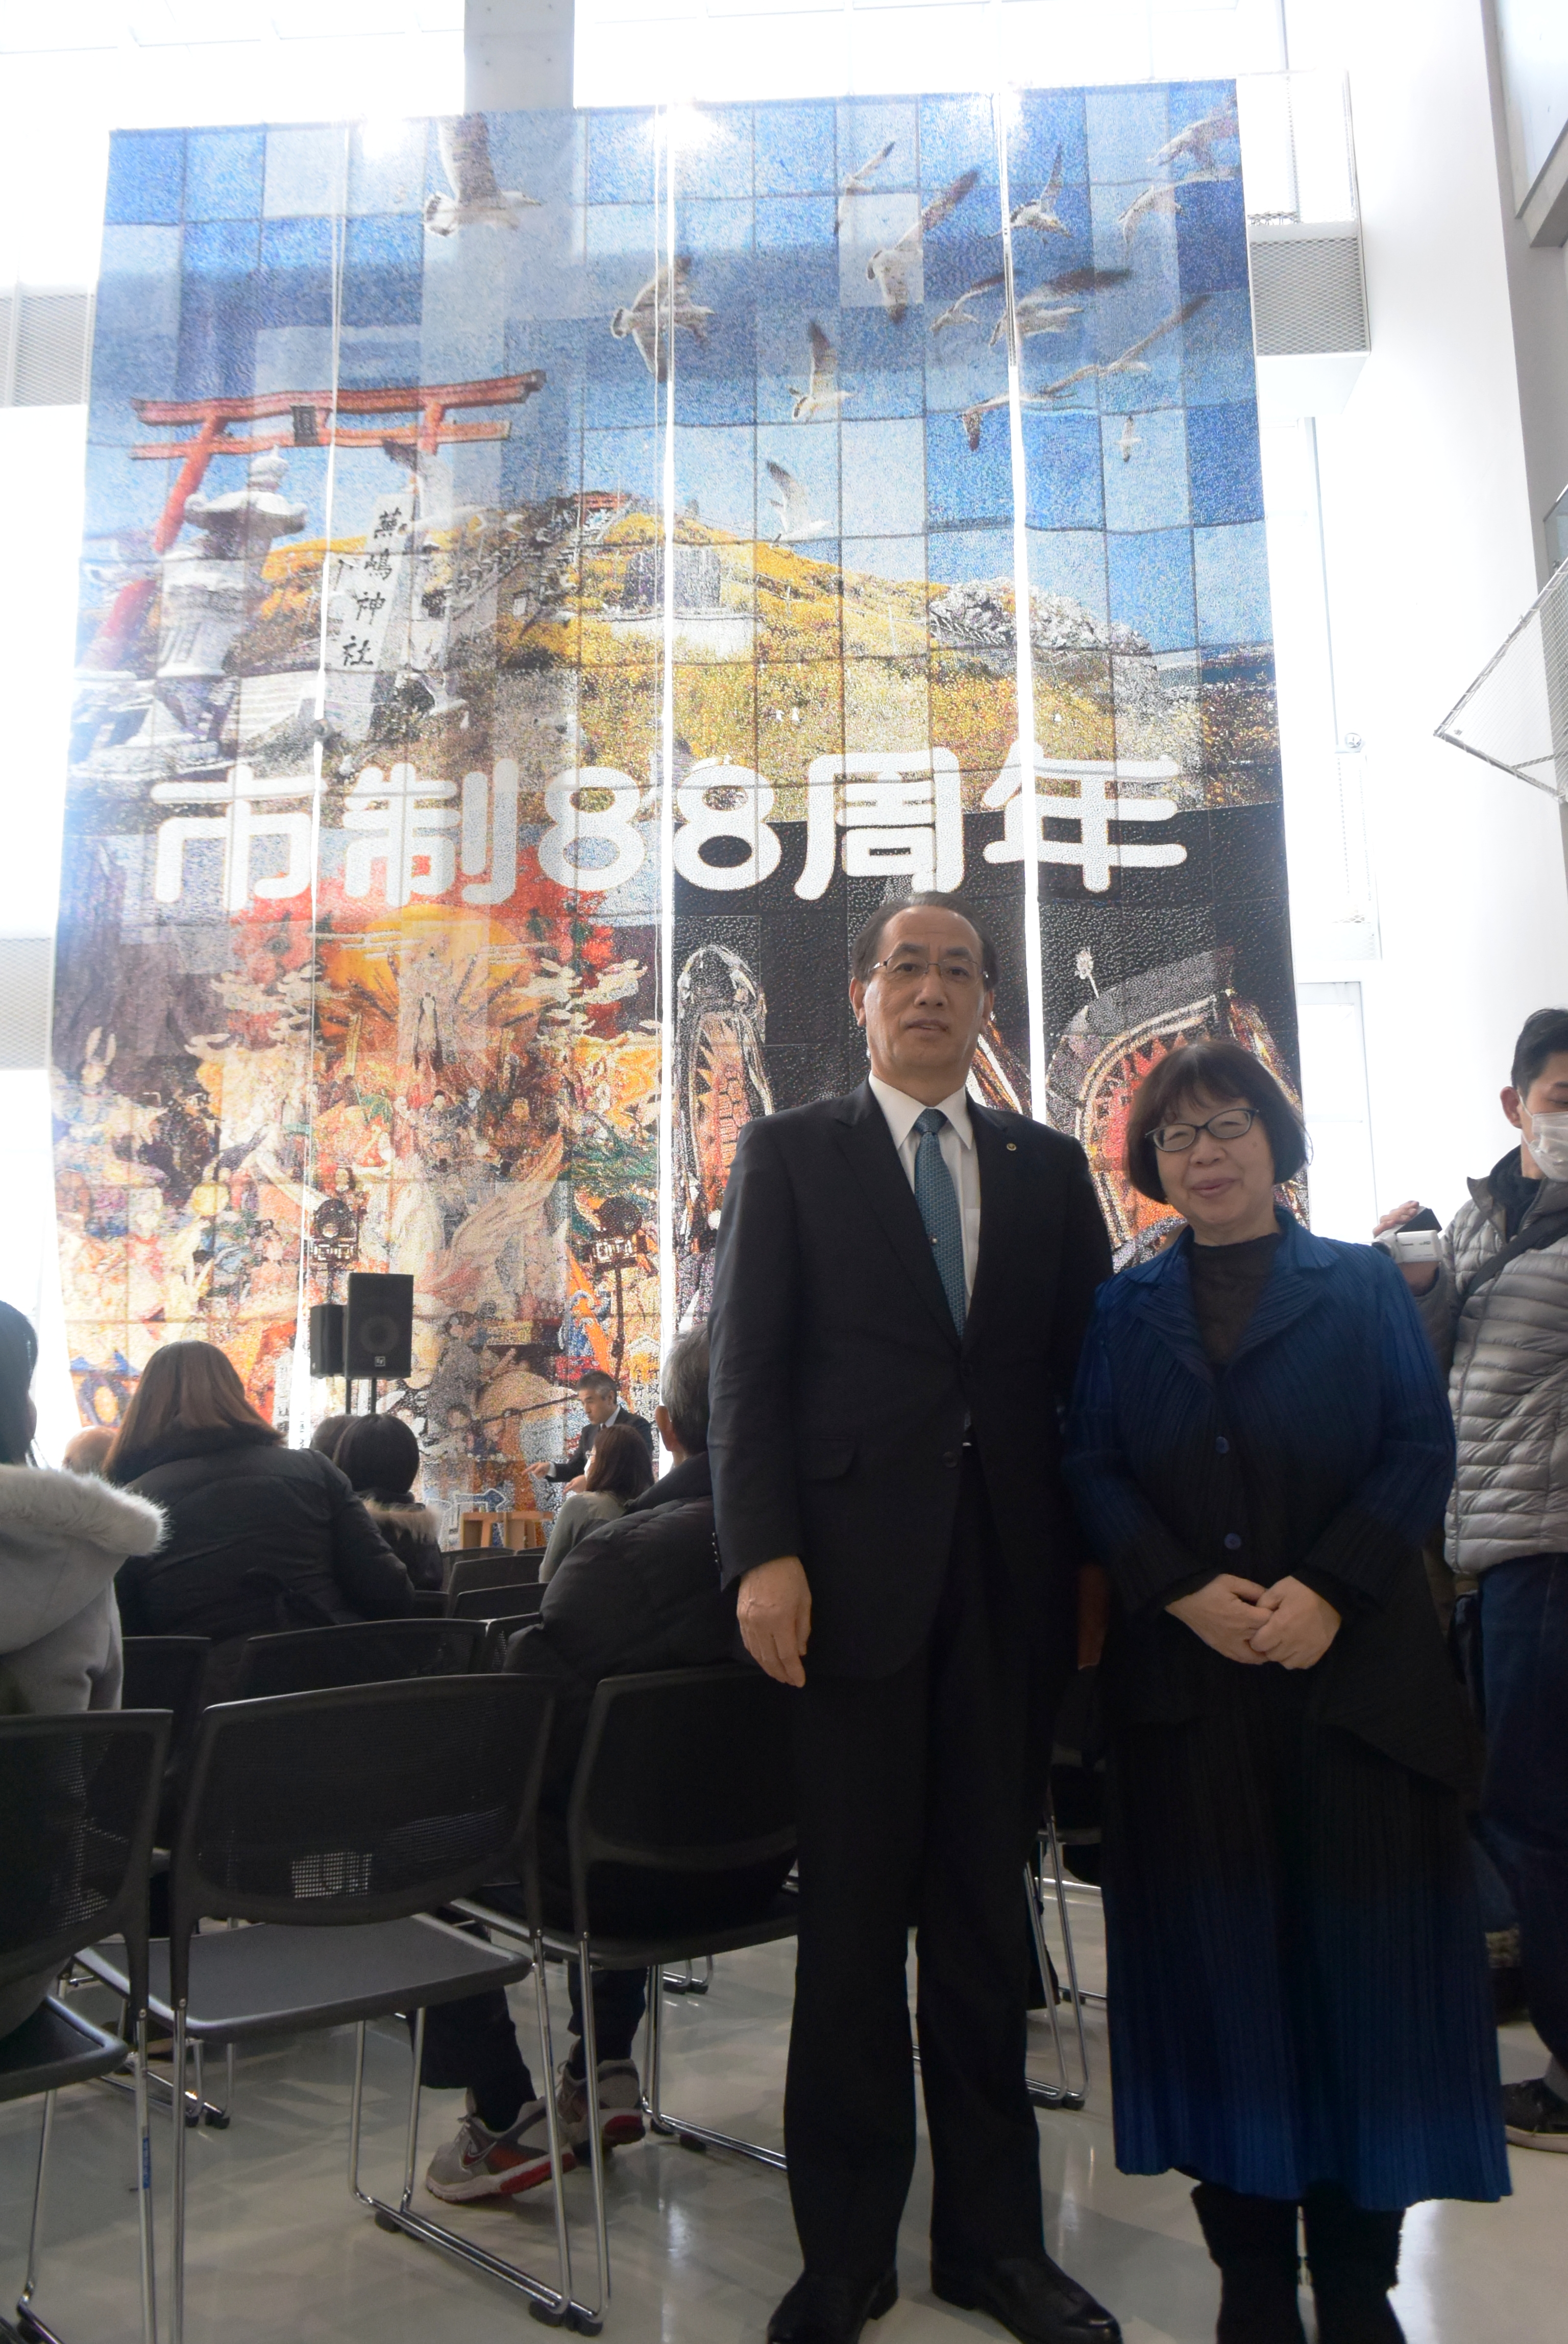 「世界一大きな絵2018八戸市 市制88周年」が披露されました。